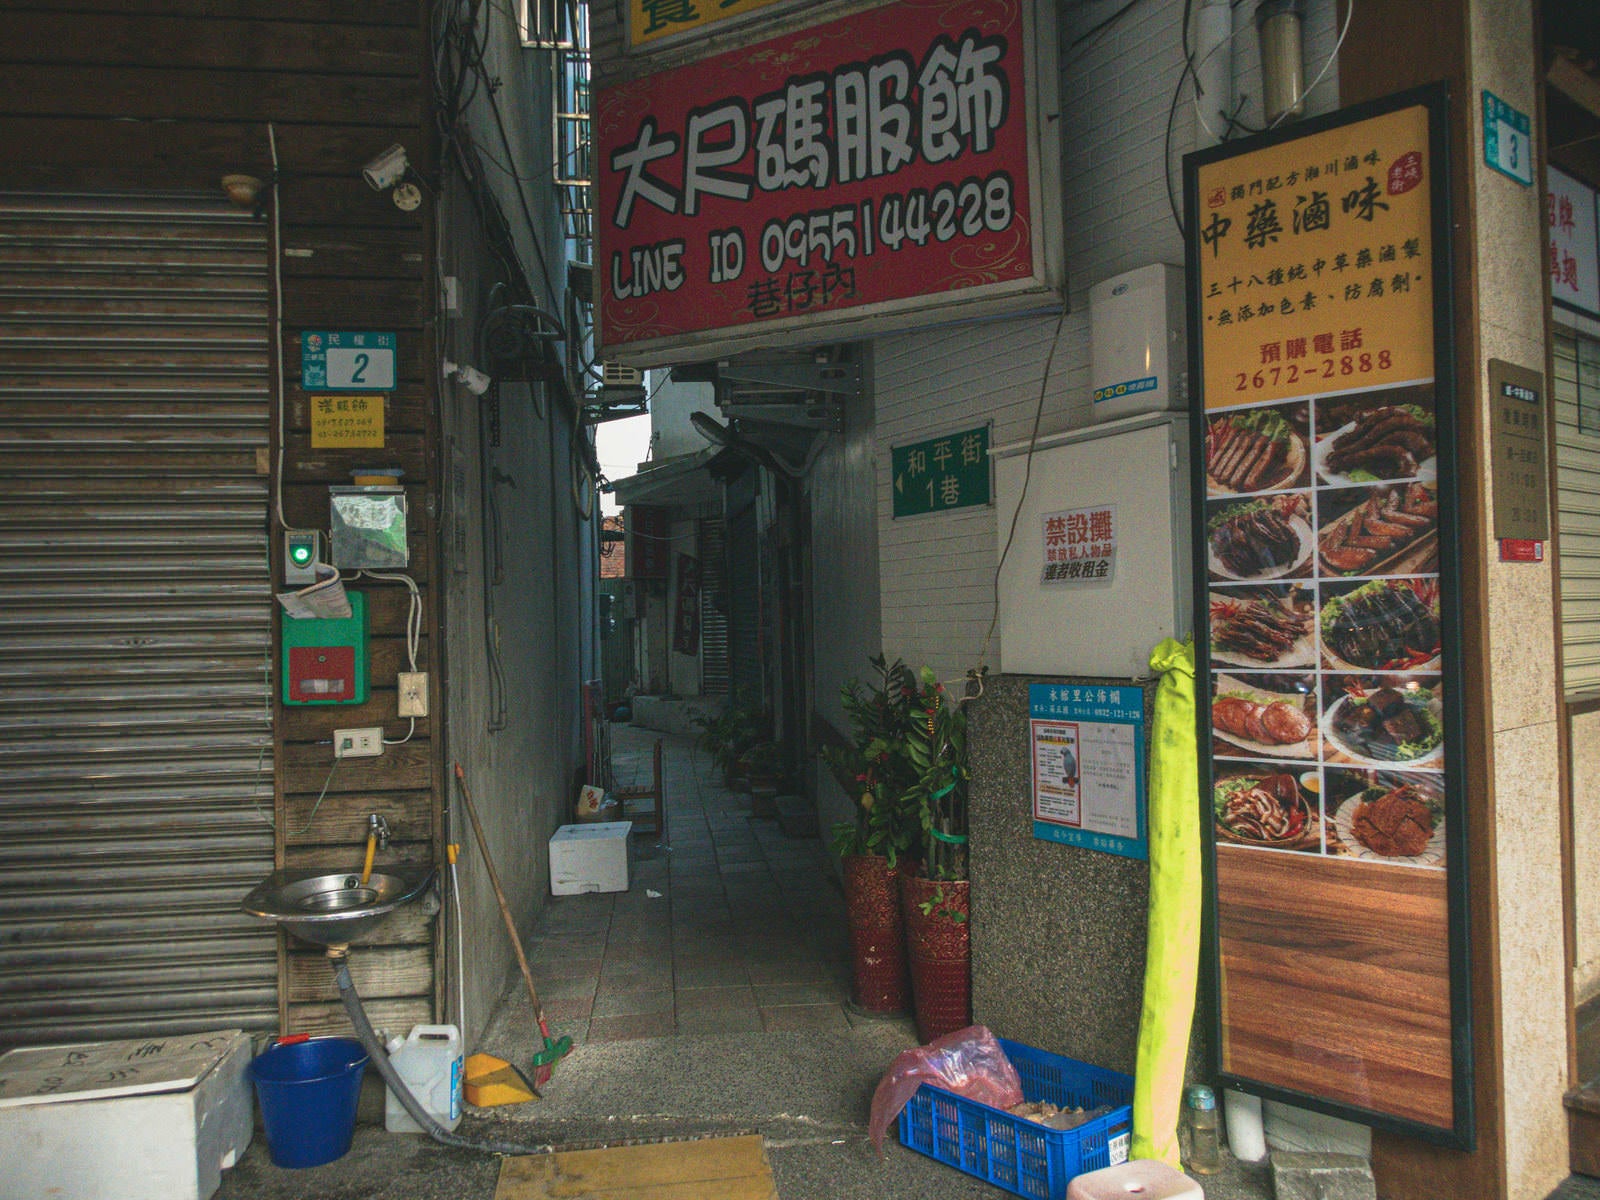 「鶯歌駅近くの飲食店の路地裏」の写真